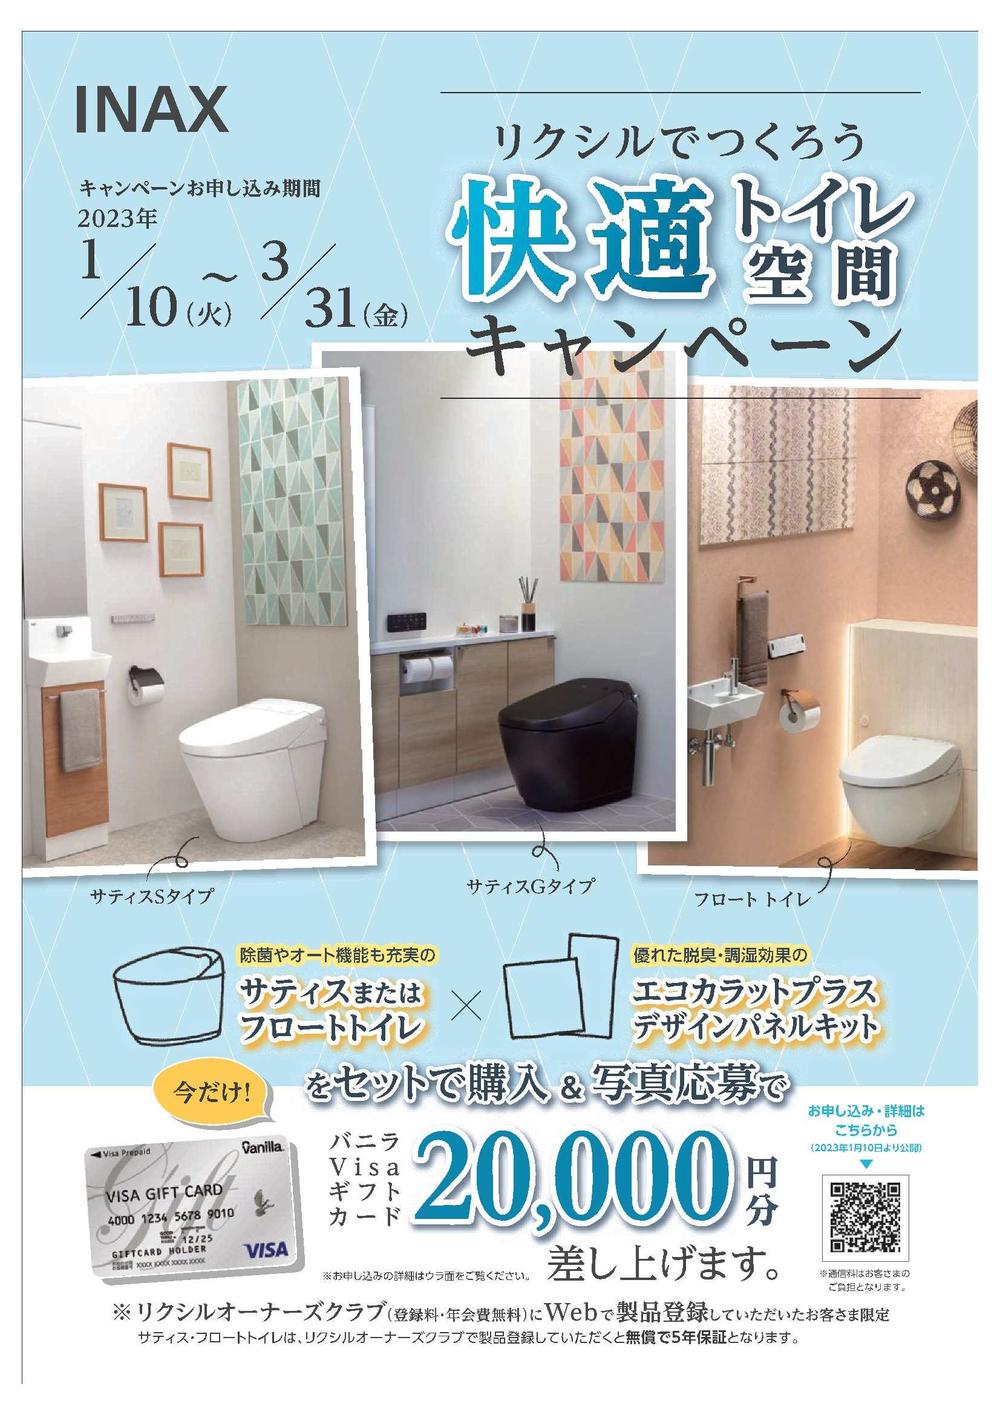 202301_toiletcampaign.jpg